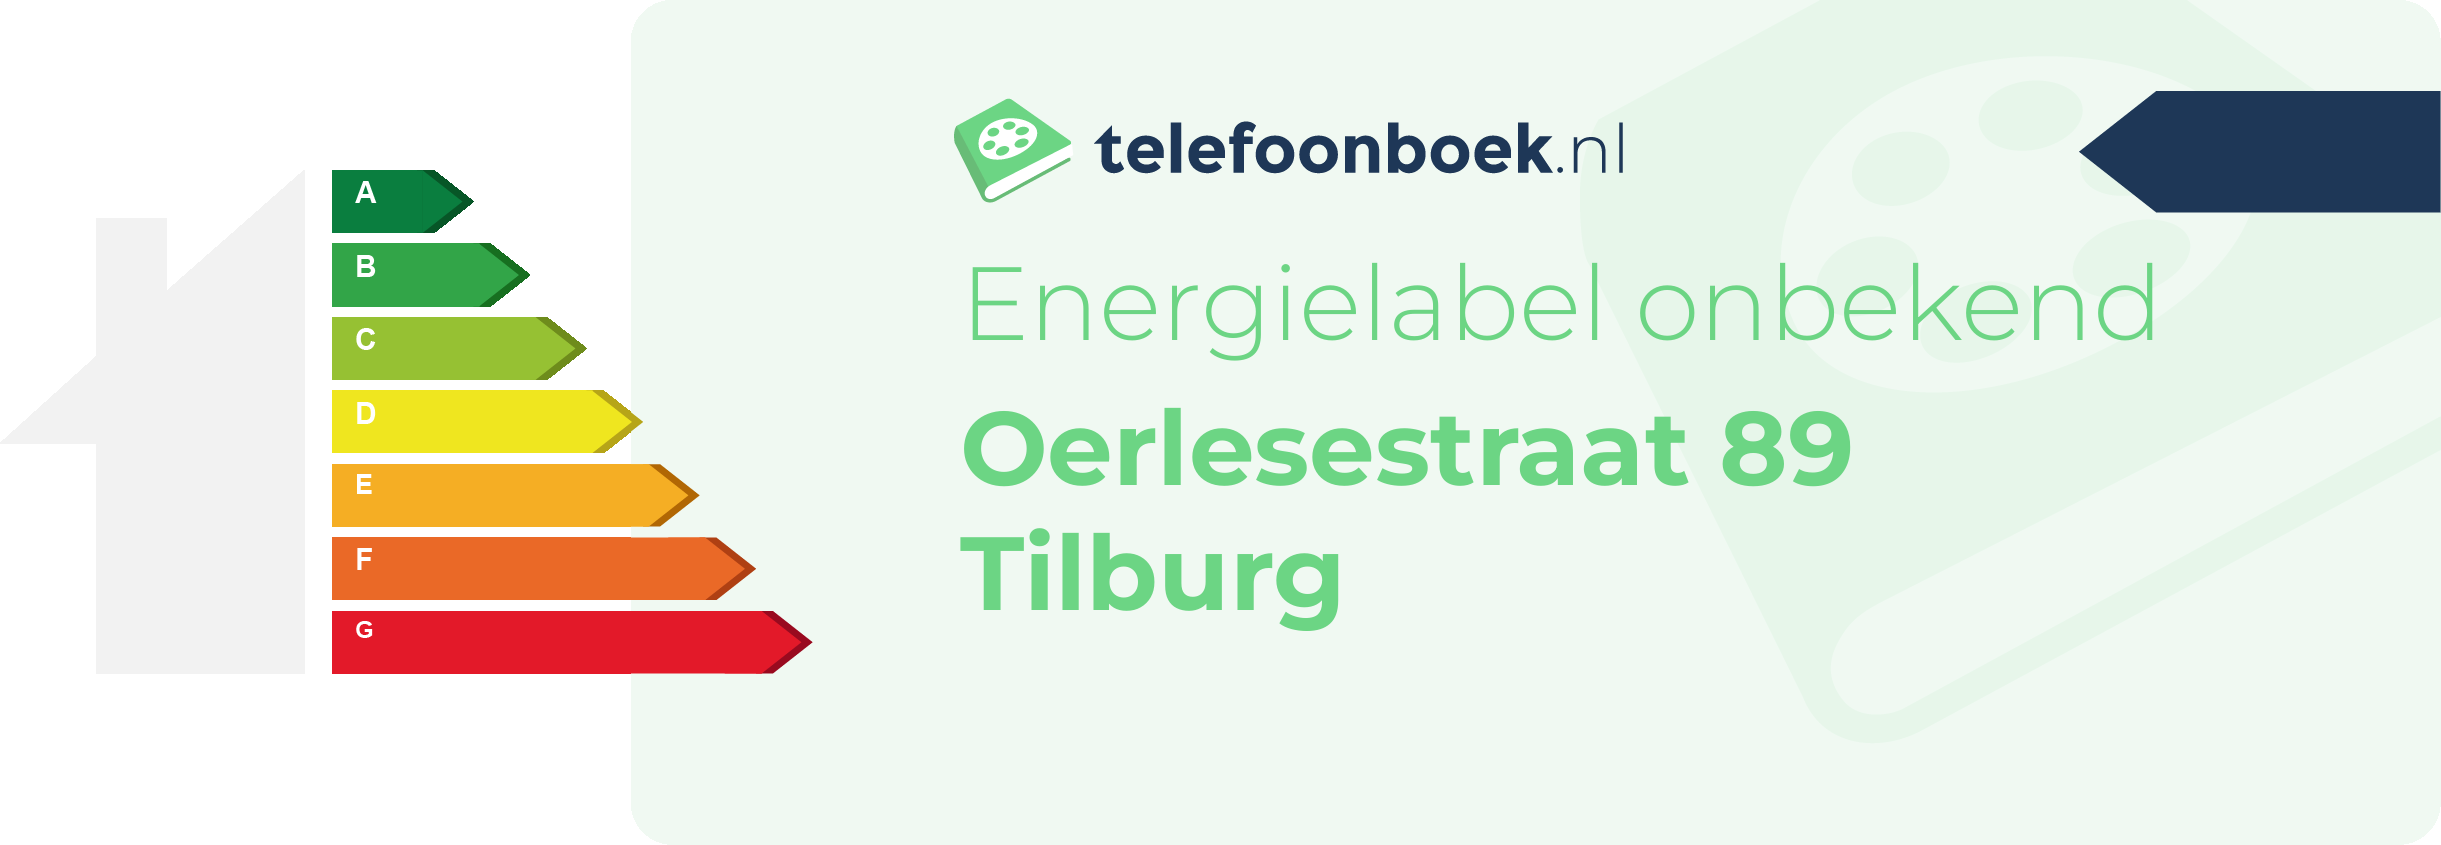 Energielabel Oerlesestraat 89 Tilburg